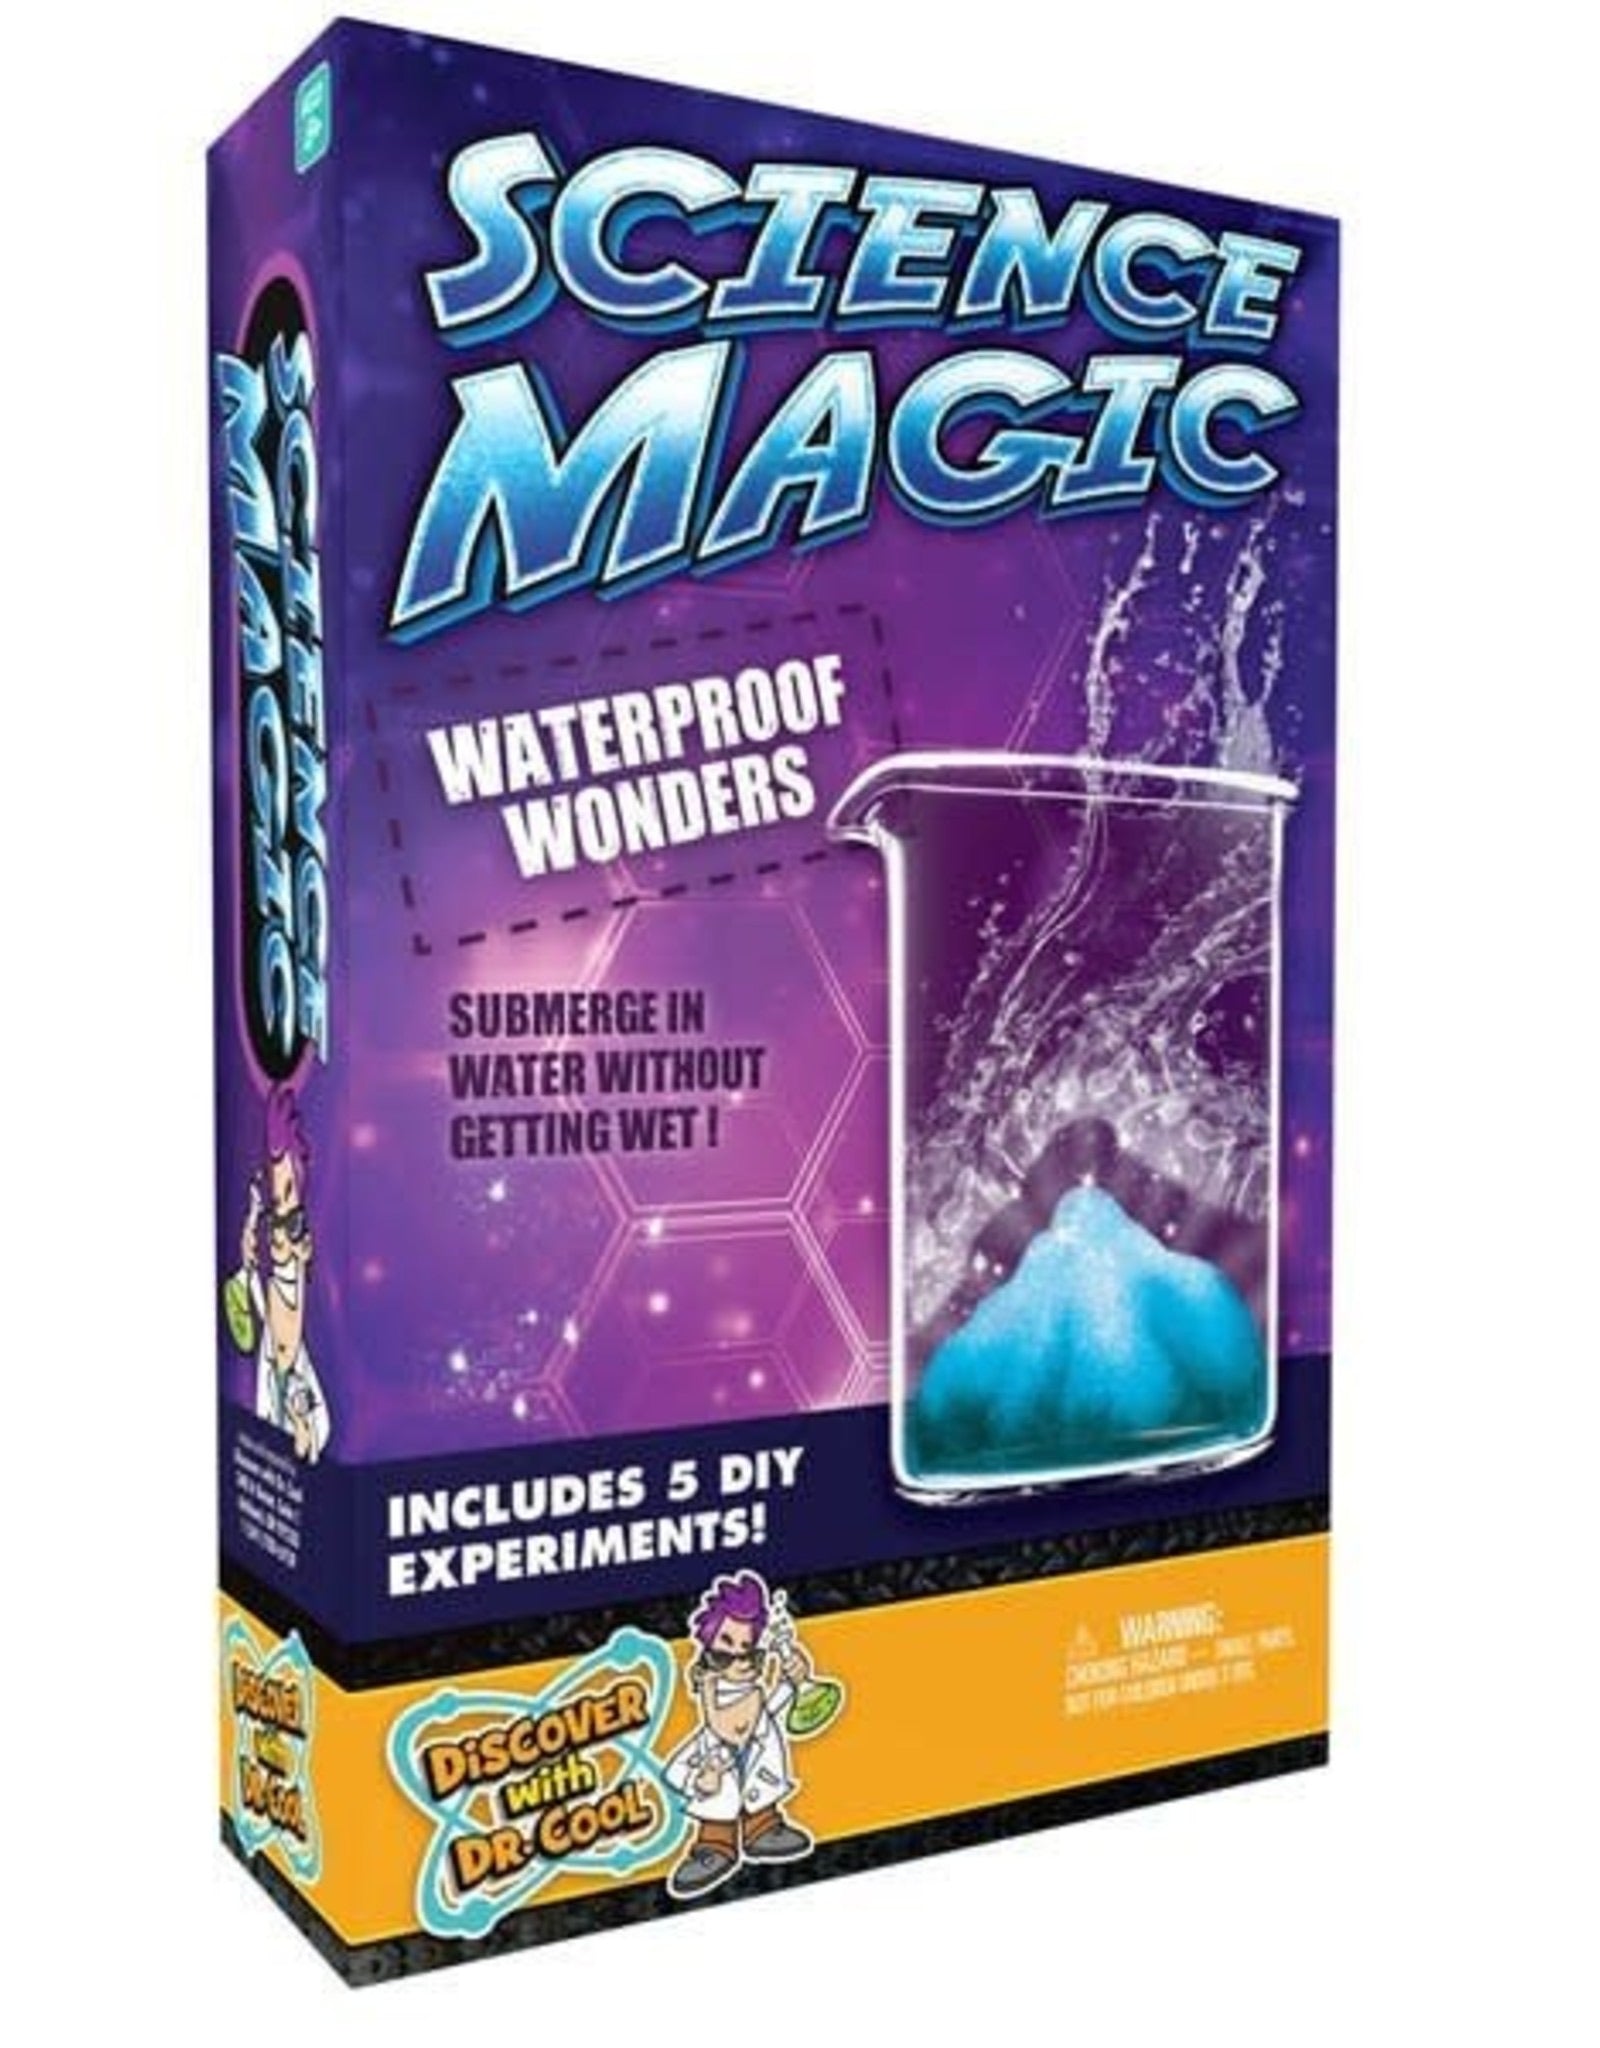 Science Magic Waterproof Wonders by Dr. Cool